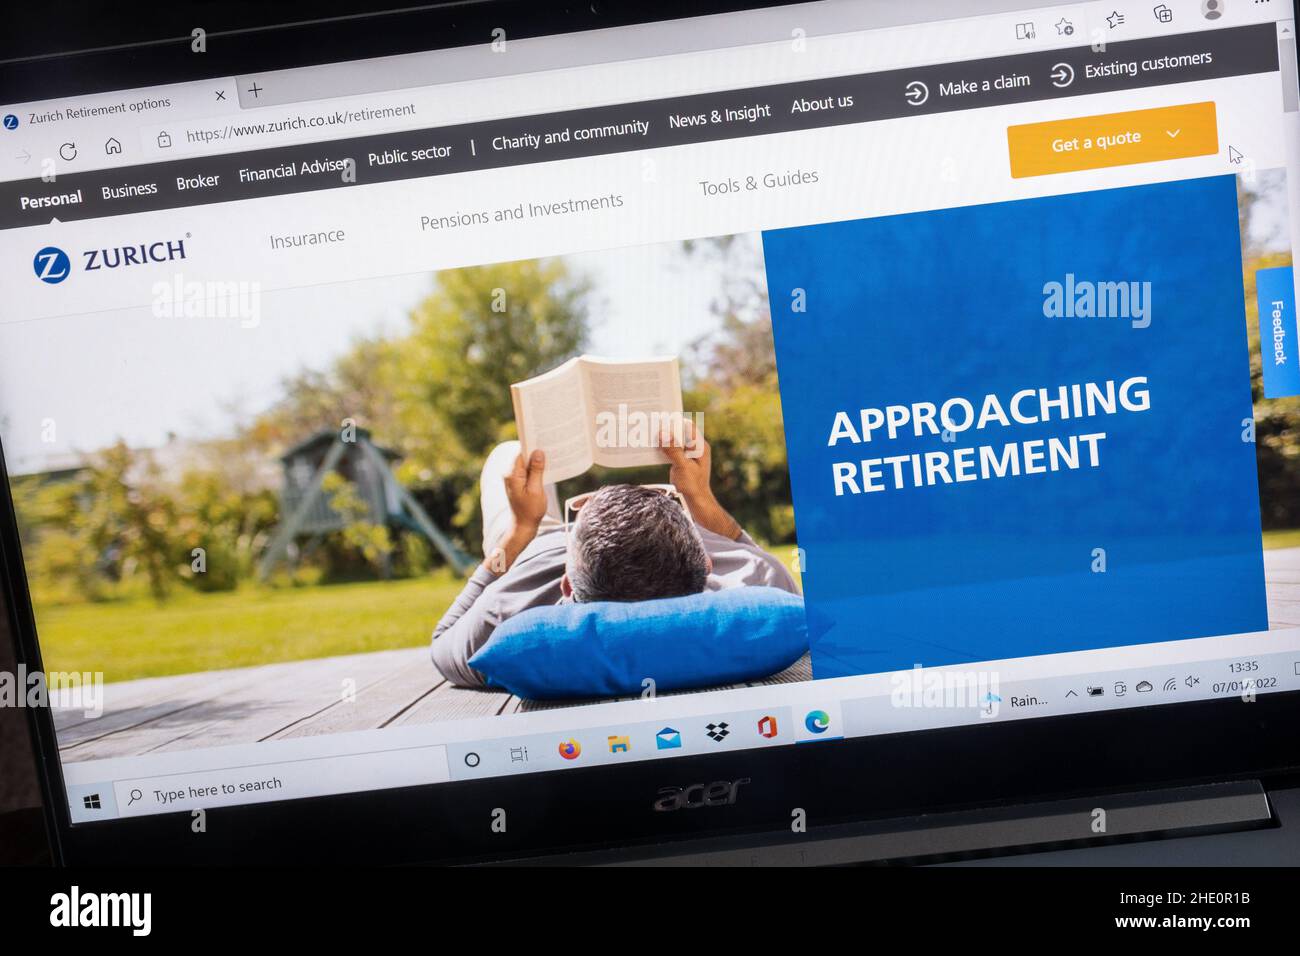 Sito web della compagnia assicurativa di Zurigo su un computer portatile, Regno Unito. Pagina di consulenza su pensioni e investimenti, in vista del pensionamento. Foto Stock